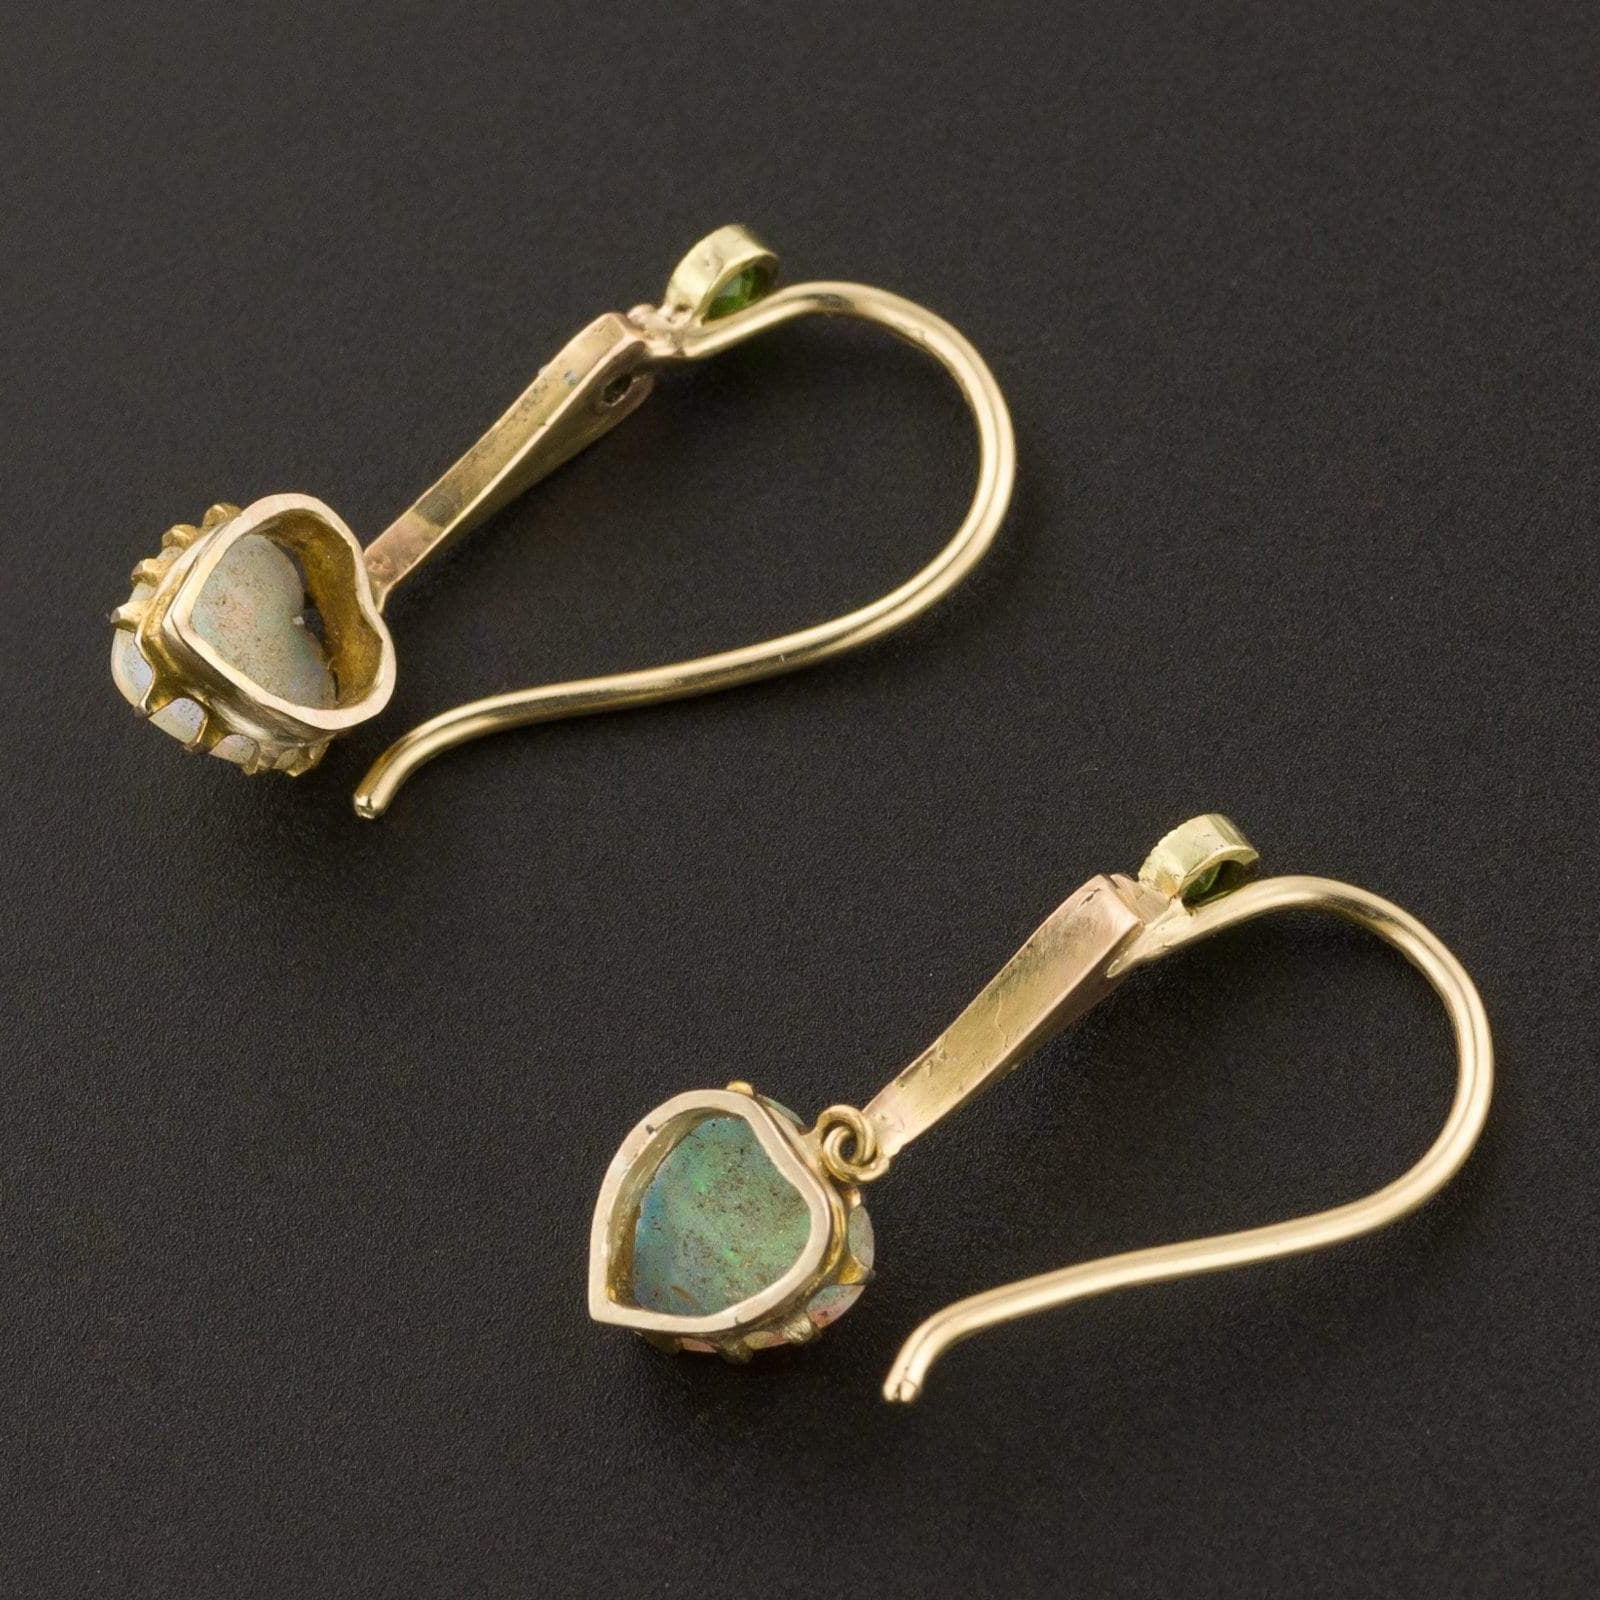 Opal Heart Earrings | Antique Opal Heart Earrings with Diamond & Deman ...